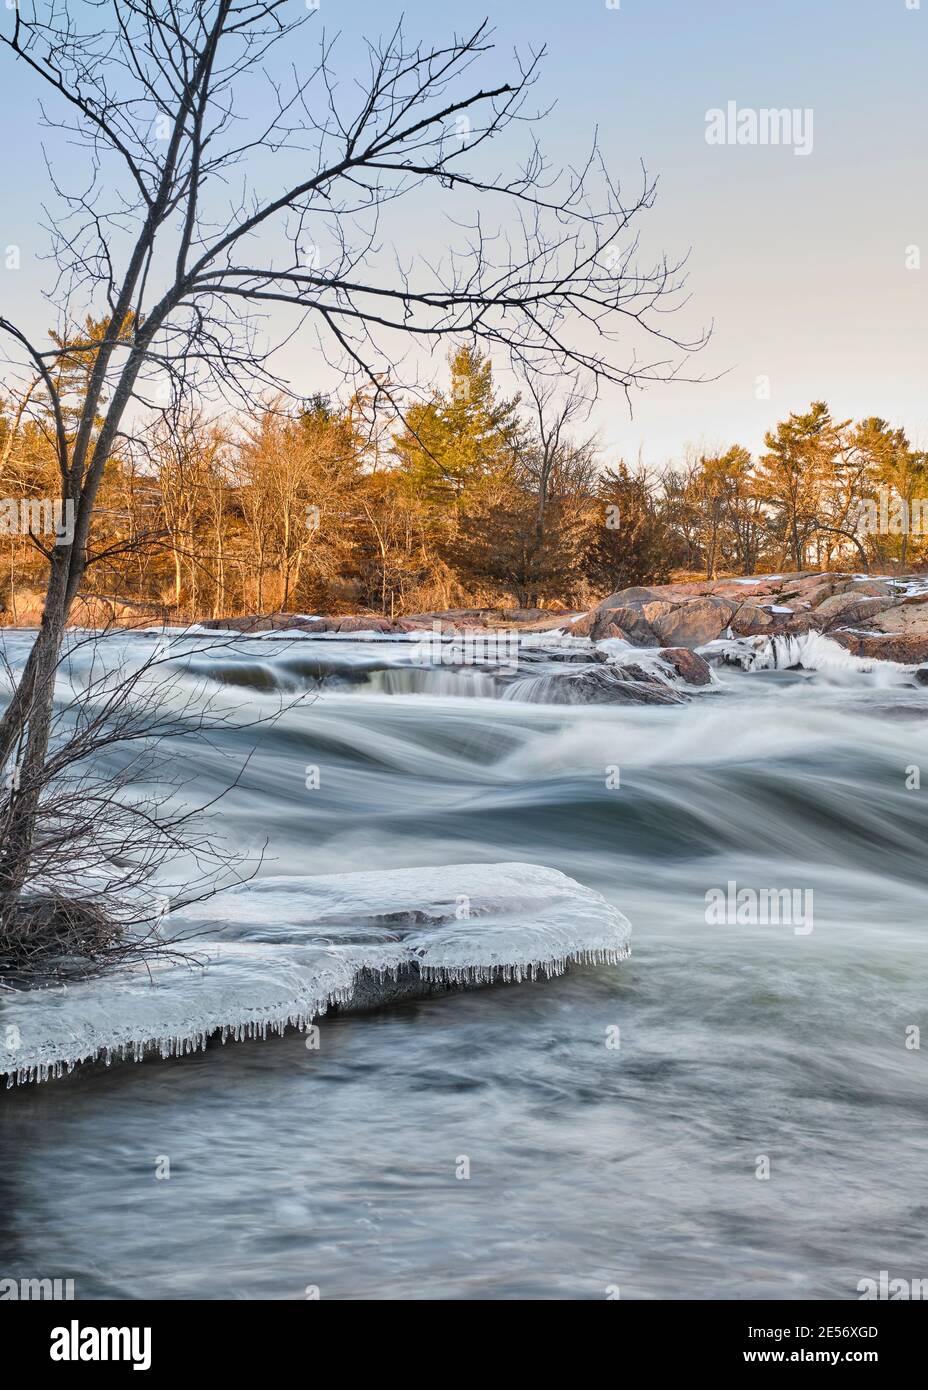 Le lever du soleil illumine les arbres et les rochers en granit des chutes Burleigh tandis que de la glace se forme sur les rives au début de l'hiver. Banque D'Images